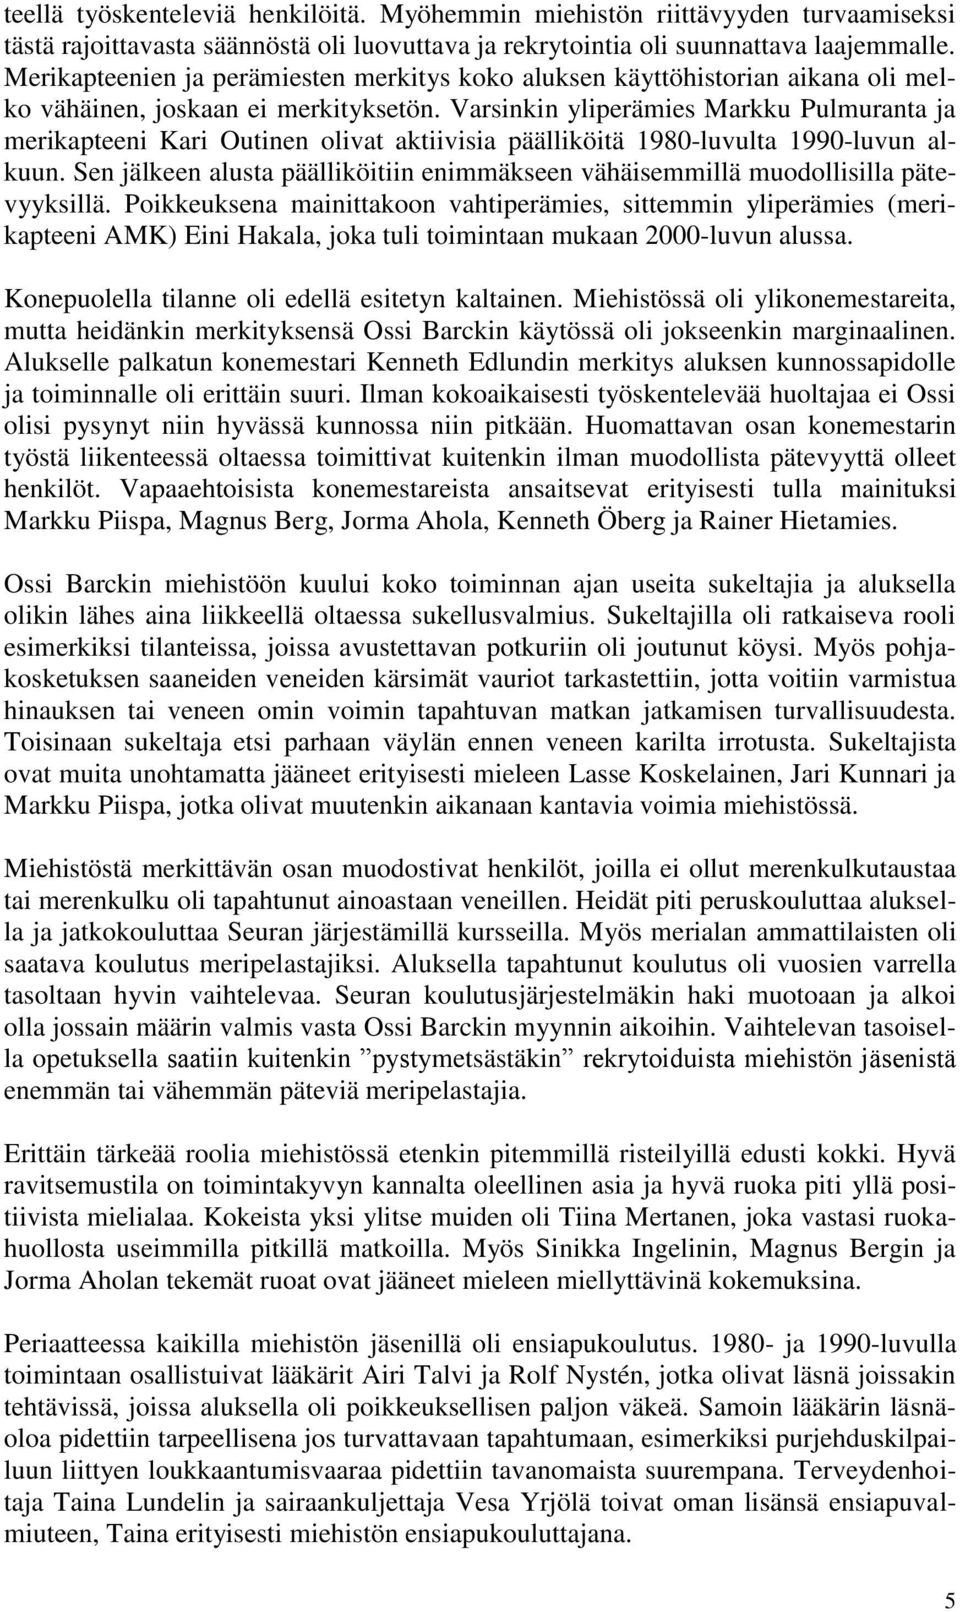 Varsinkin yliperämies Markku Pulmuranta ja merikapteeni Kari Outinen olivat aktiivisia päälliköitä 1980-luvulta 1990-luvun alkuun.